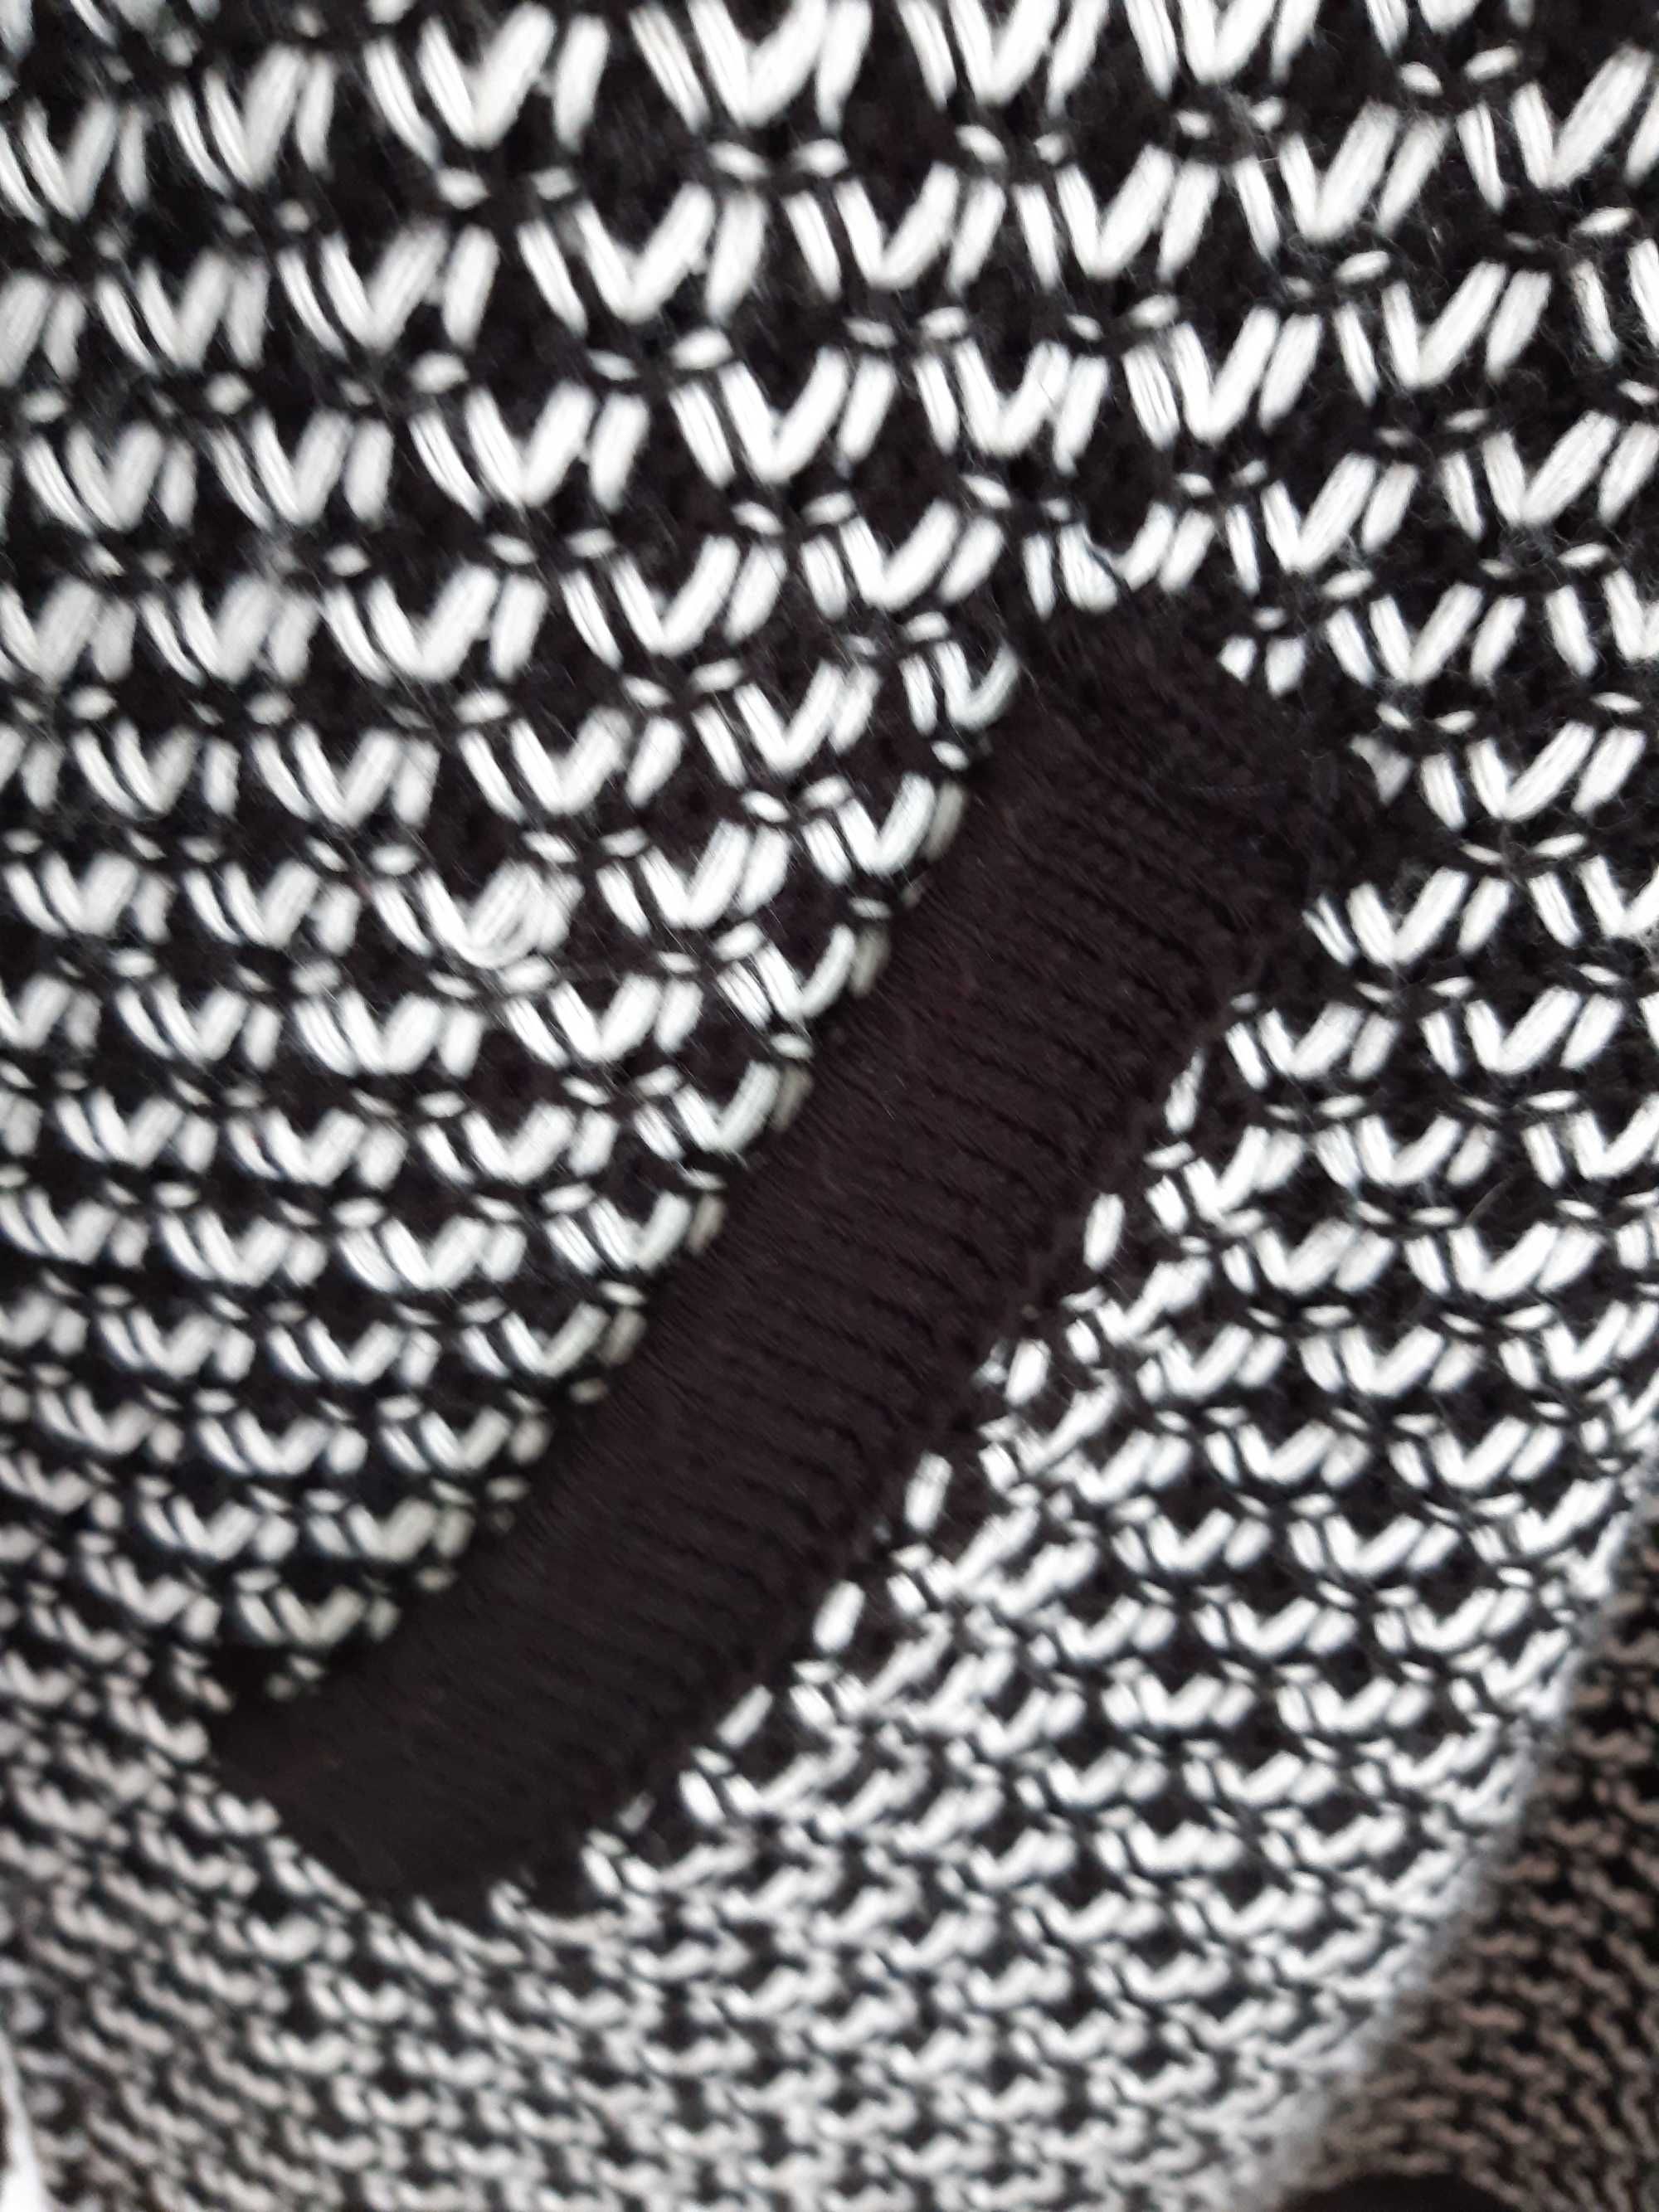 Casaco de malha preto e branco tamanho XL